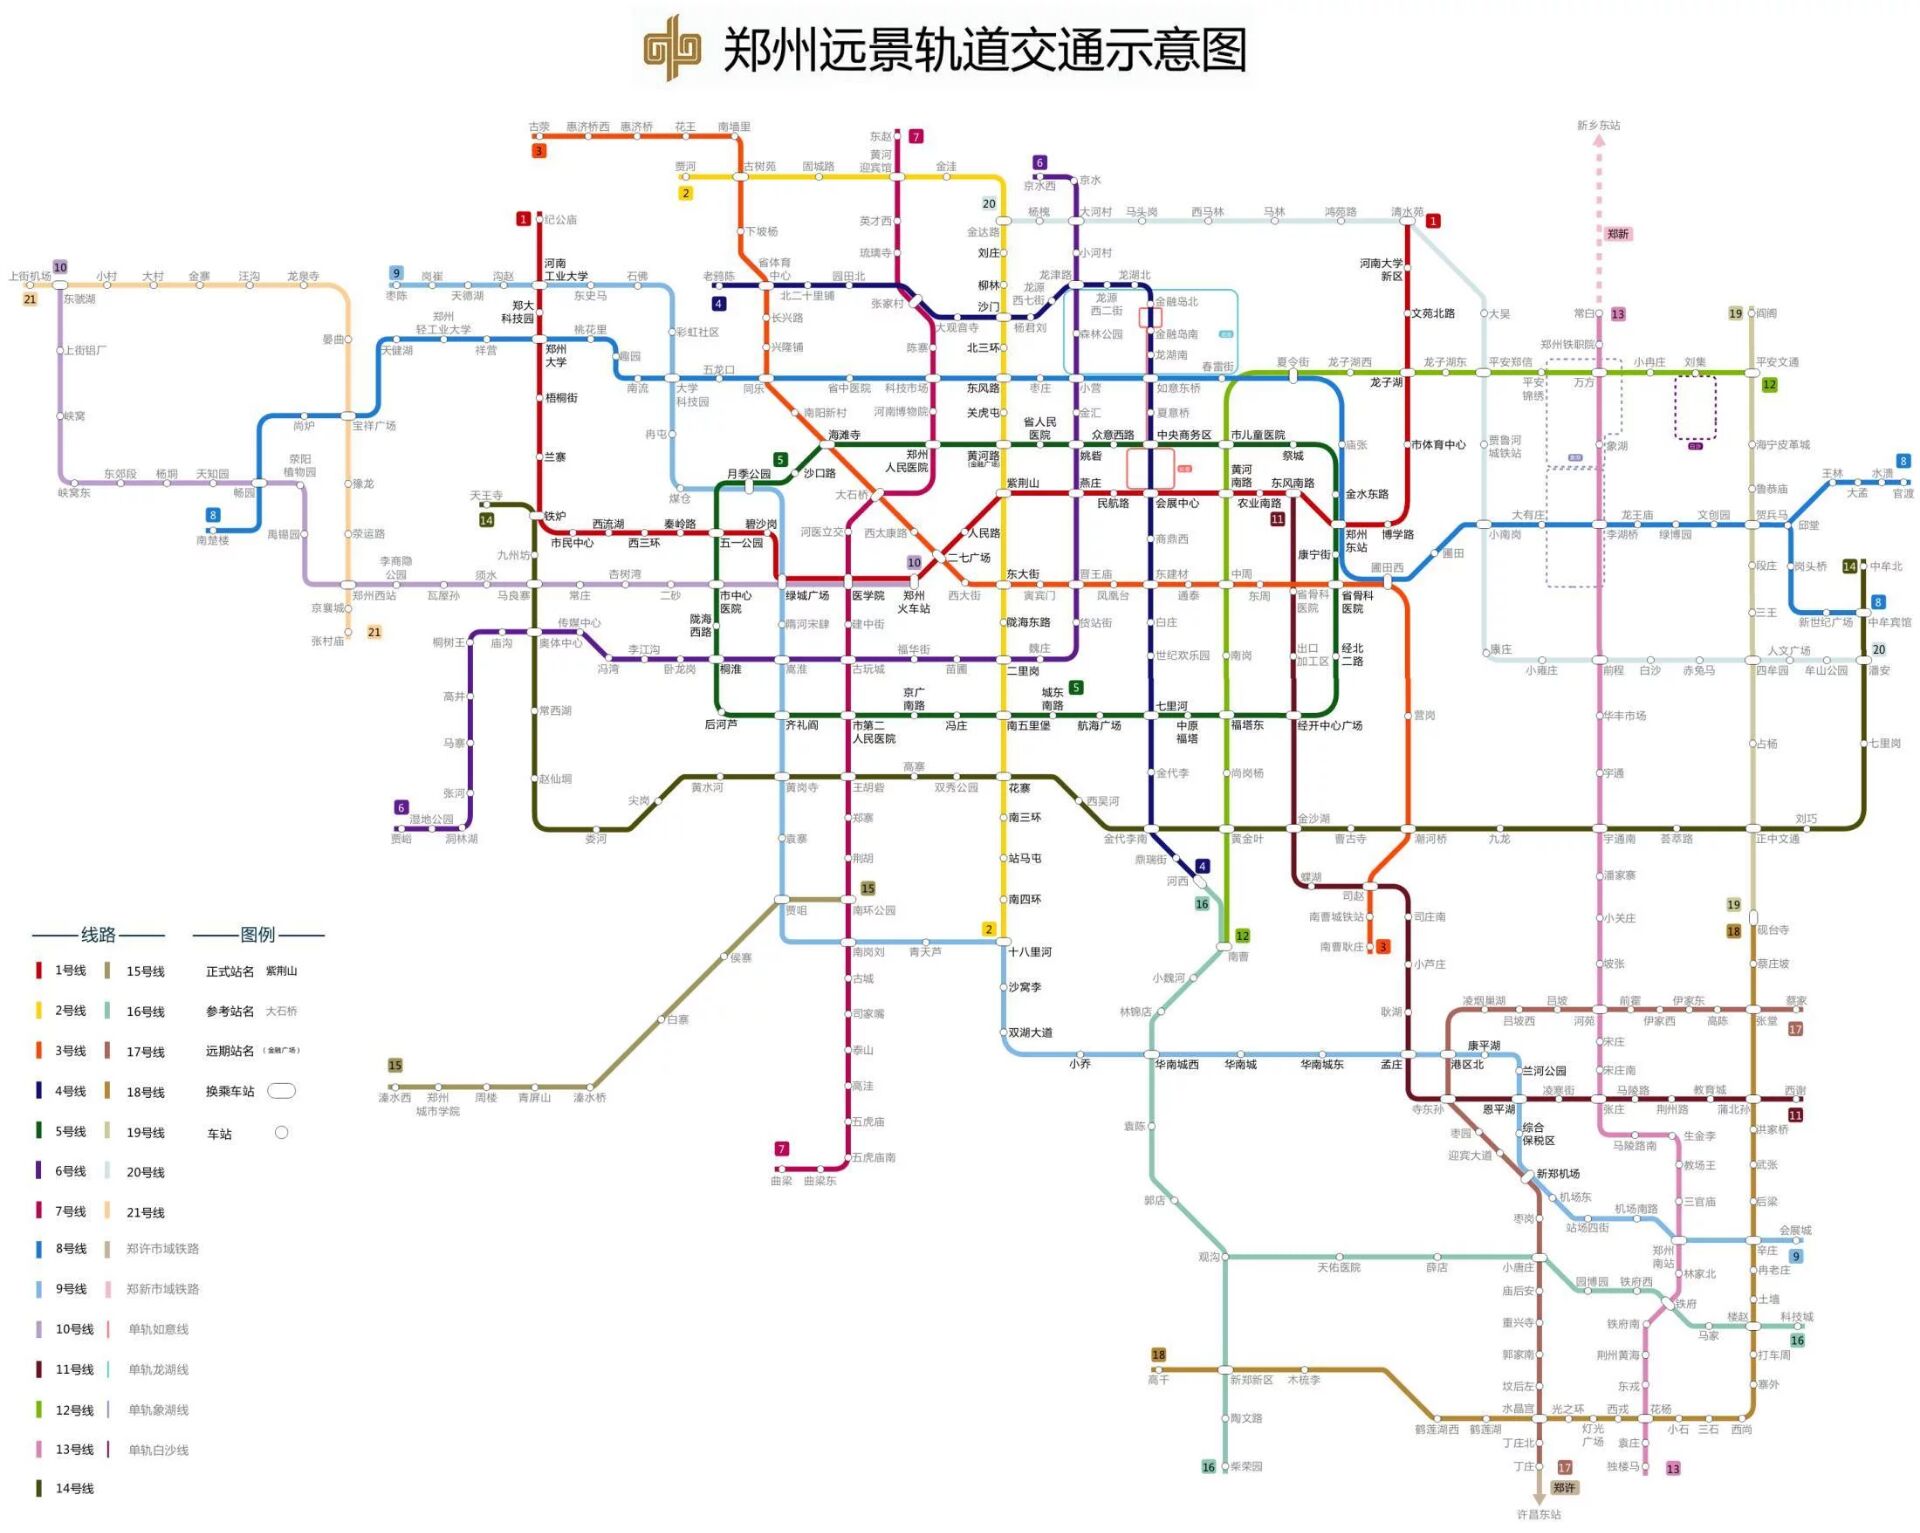 车站的换乘信息), 应用程序可以读取这个文件,就能掌握关于郑州地铁